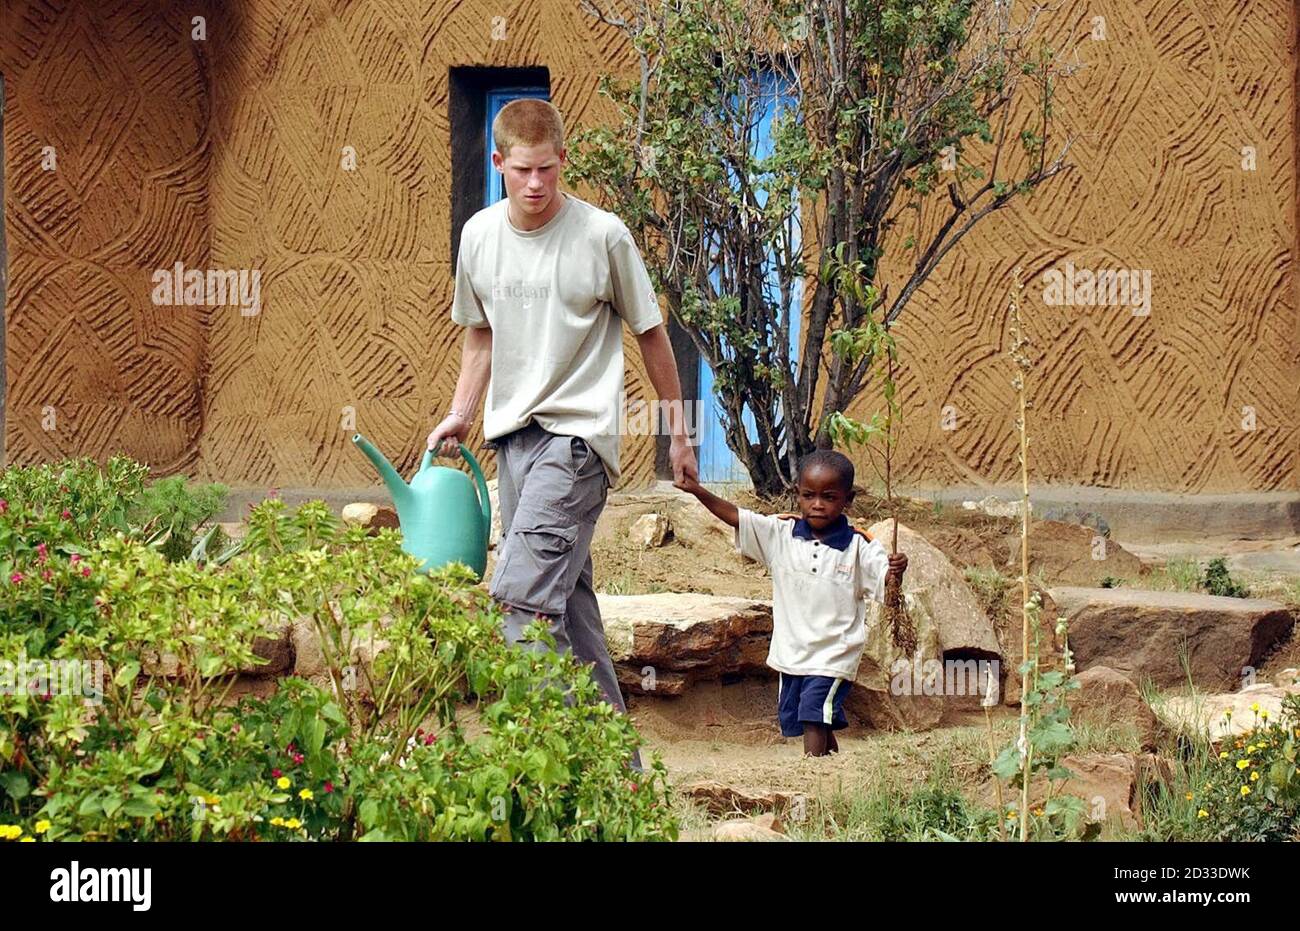 Il principe Harry, il figlio più giovane del principe Carlo della Gran Bretagna, conduce il giovane orfano Mutsu Potsane, 4 anni, per mano a piantare un albero di pesca insieme alla casa dei bambini Mants'ase per gli orfani vicino Mohale's Hoek, circa 60 miglia a sud di Maseru in Lesotho. Il principe di 19 anni è stato nel paese dell'Africa meridionale per tre settimane come parte del suo anno di gap e ha anche incontrato le vittime dell'AIDS e dei malati di tubercolosi, aiutato in altri progetti comunitari e preso in giro. Foto Stock